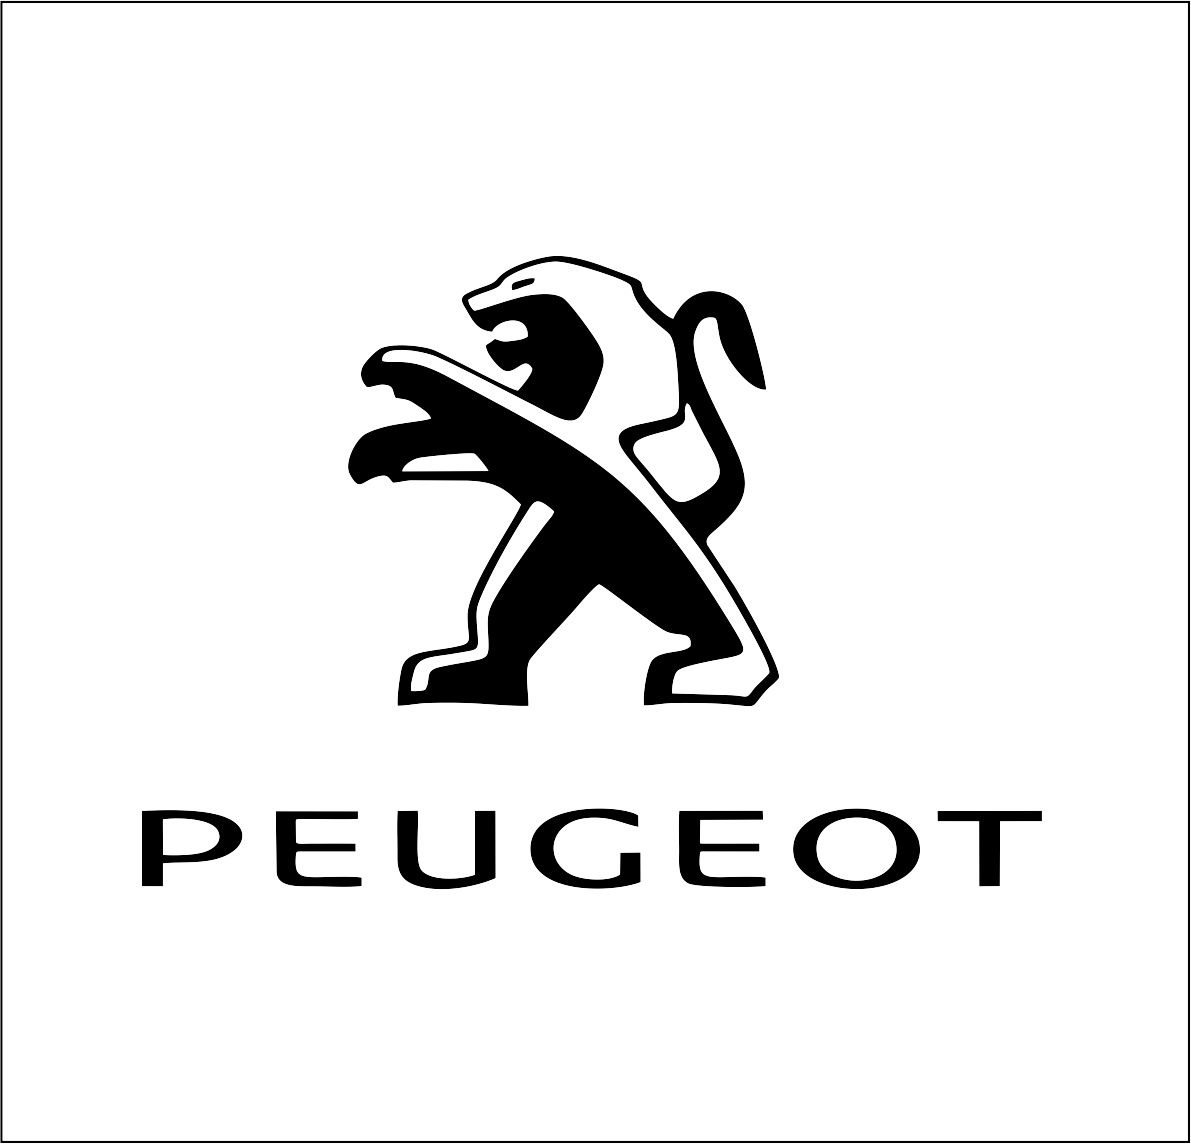 https://svgprinted.com/wp-content/uploads/2020/04/Peugeot.jpg